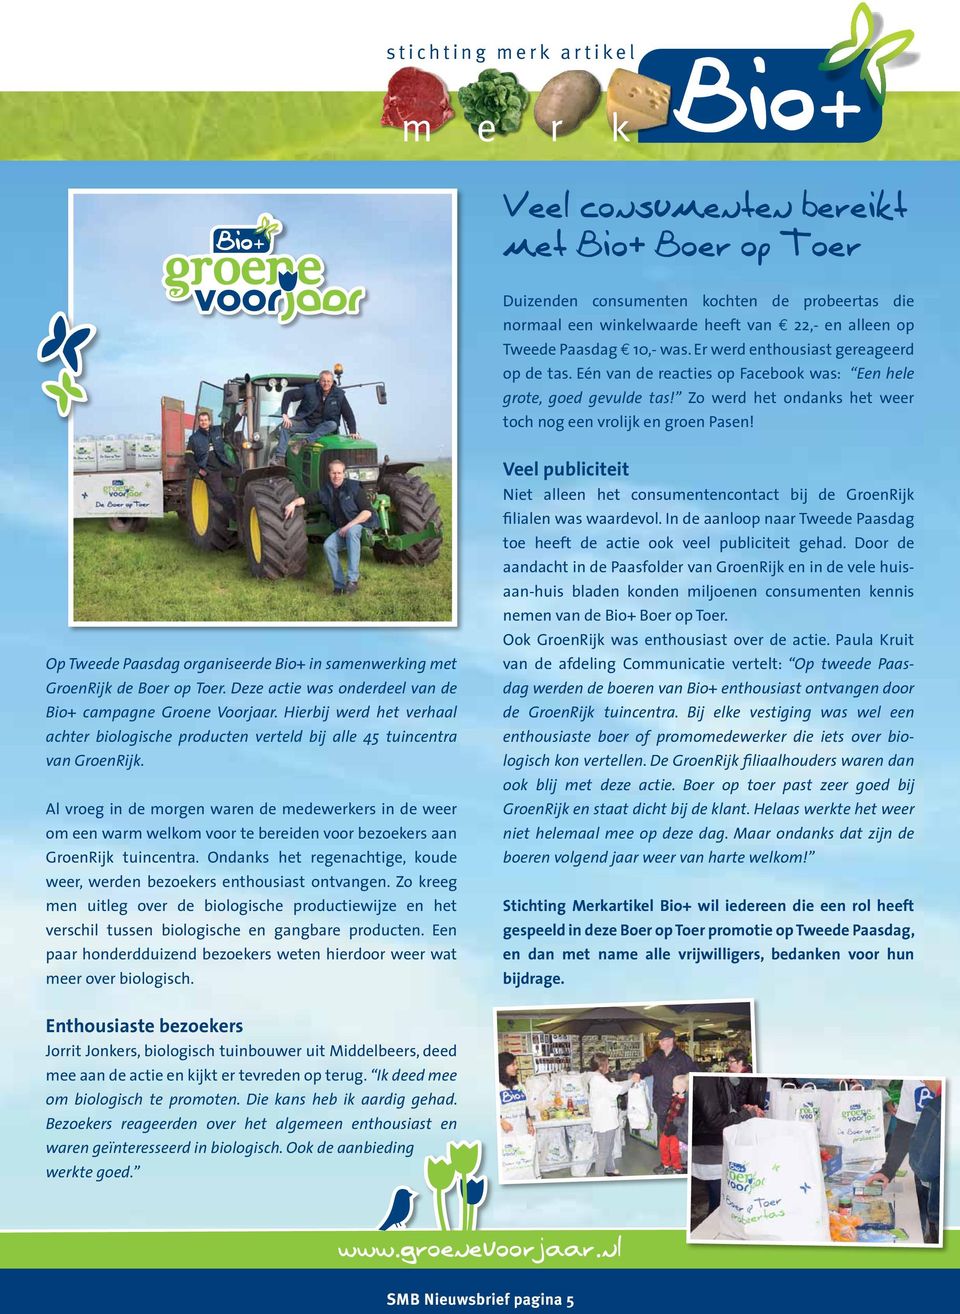 Op Tweede Paasdag organiseerde Bio+ in samenwerking met GroenRijk de Boer op Toer. Deze actie was onderdeel van de Bio+ campagne Groene Voorjaar.